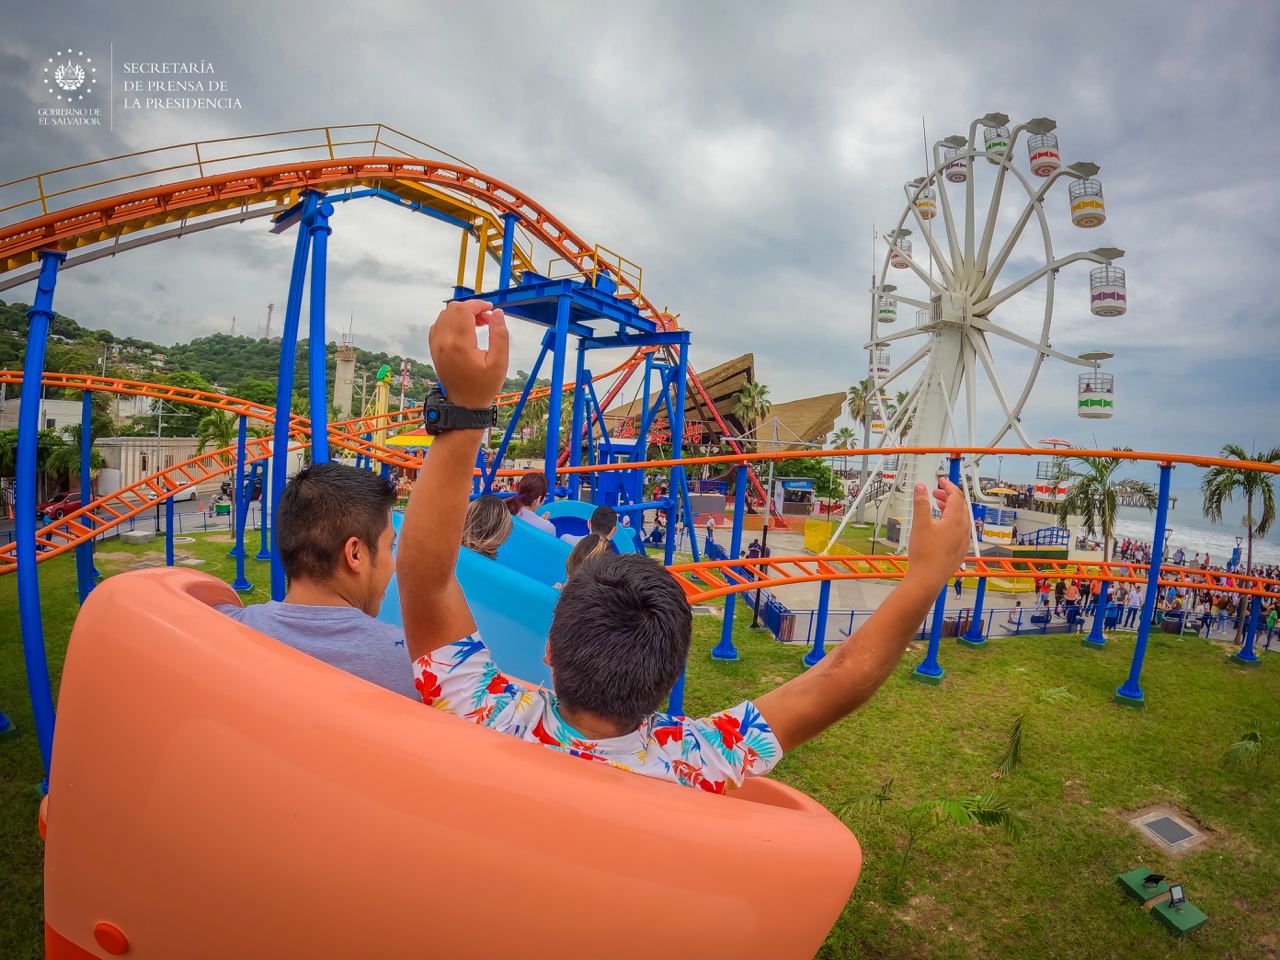 Sunset Park propiciará un incremento de 60 % en el total de visitantes al complejo turístico en La Libertad - Presidencia de la República de El Salvador